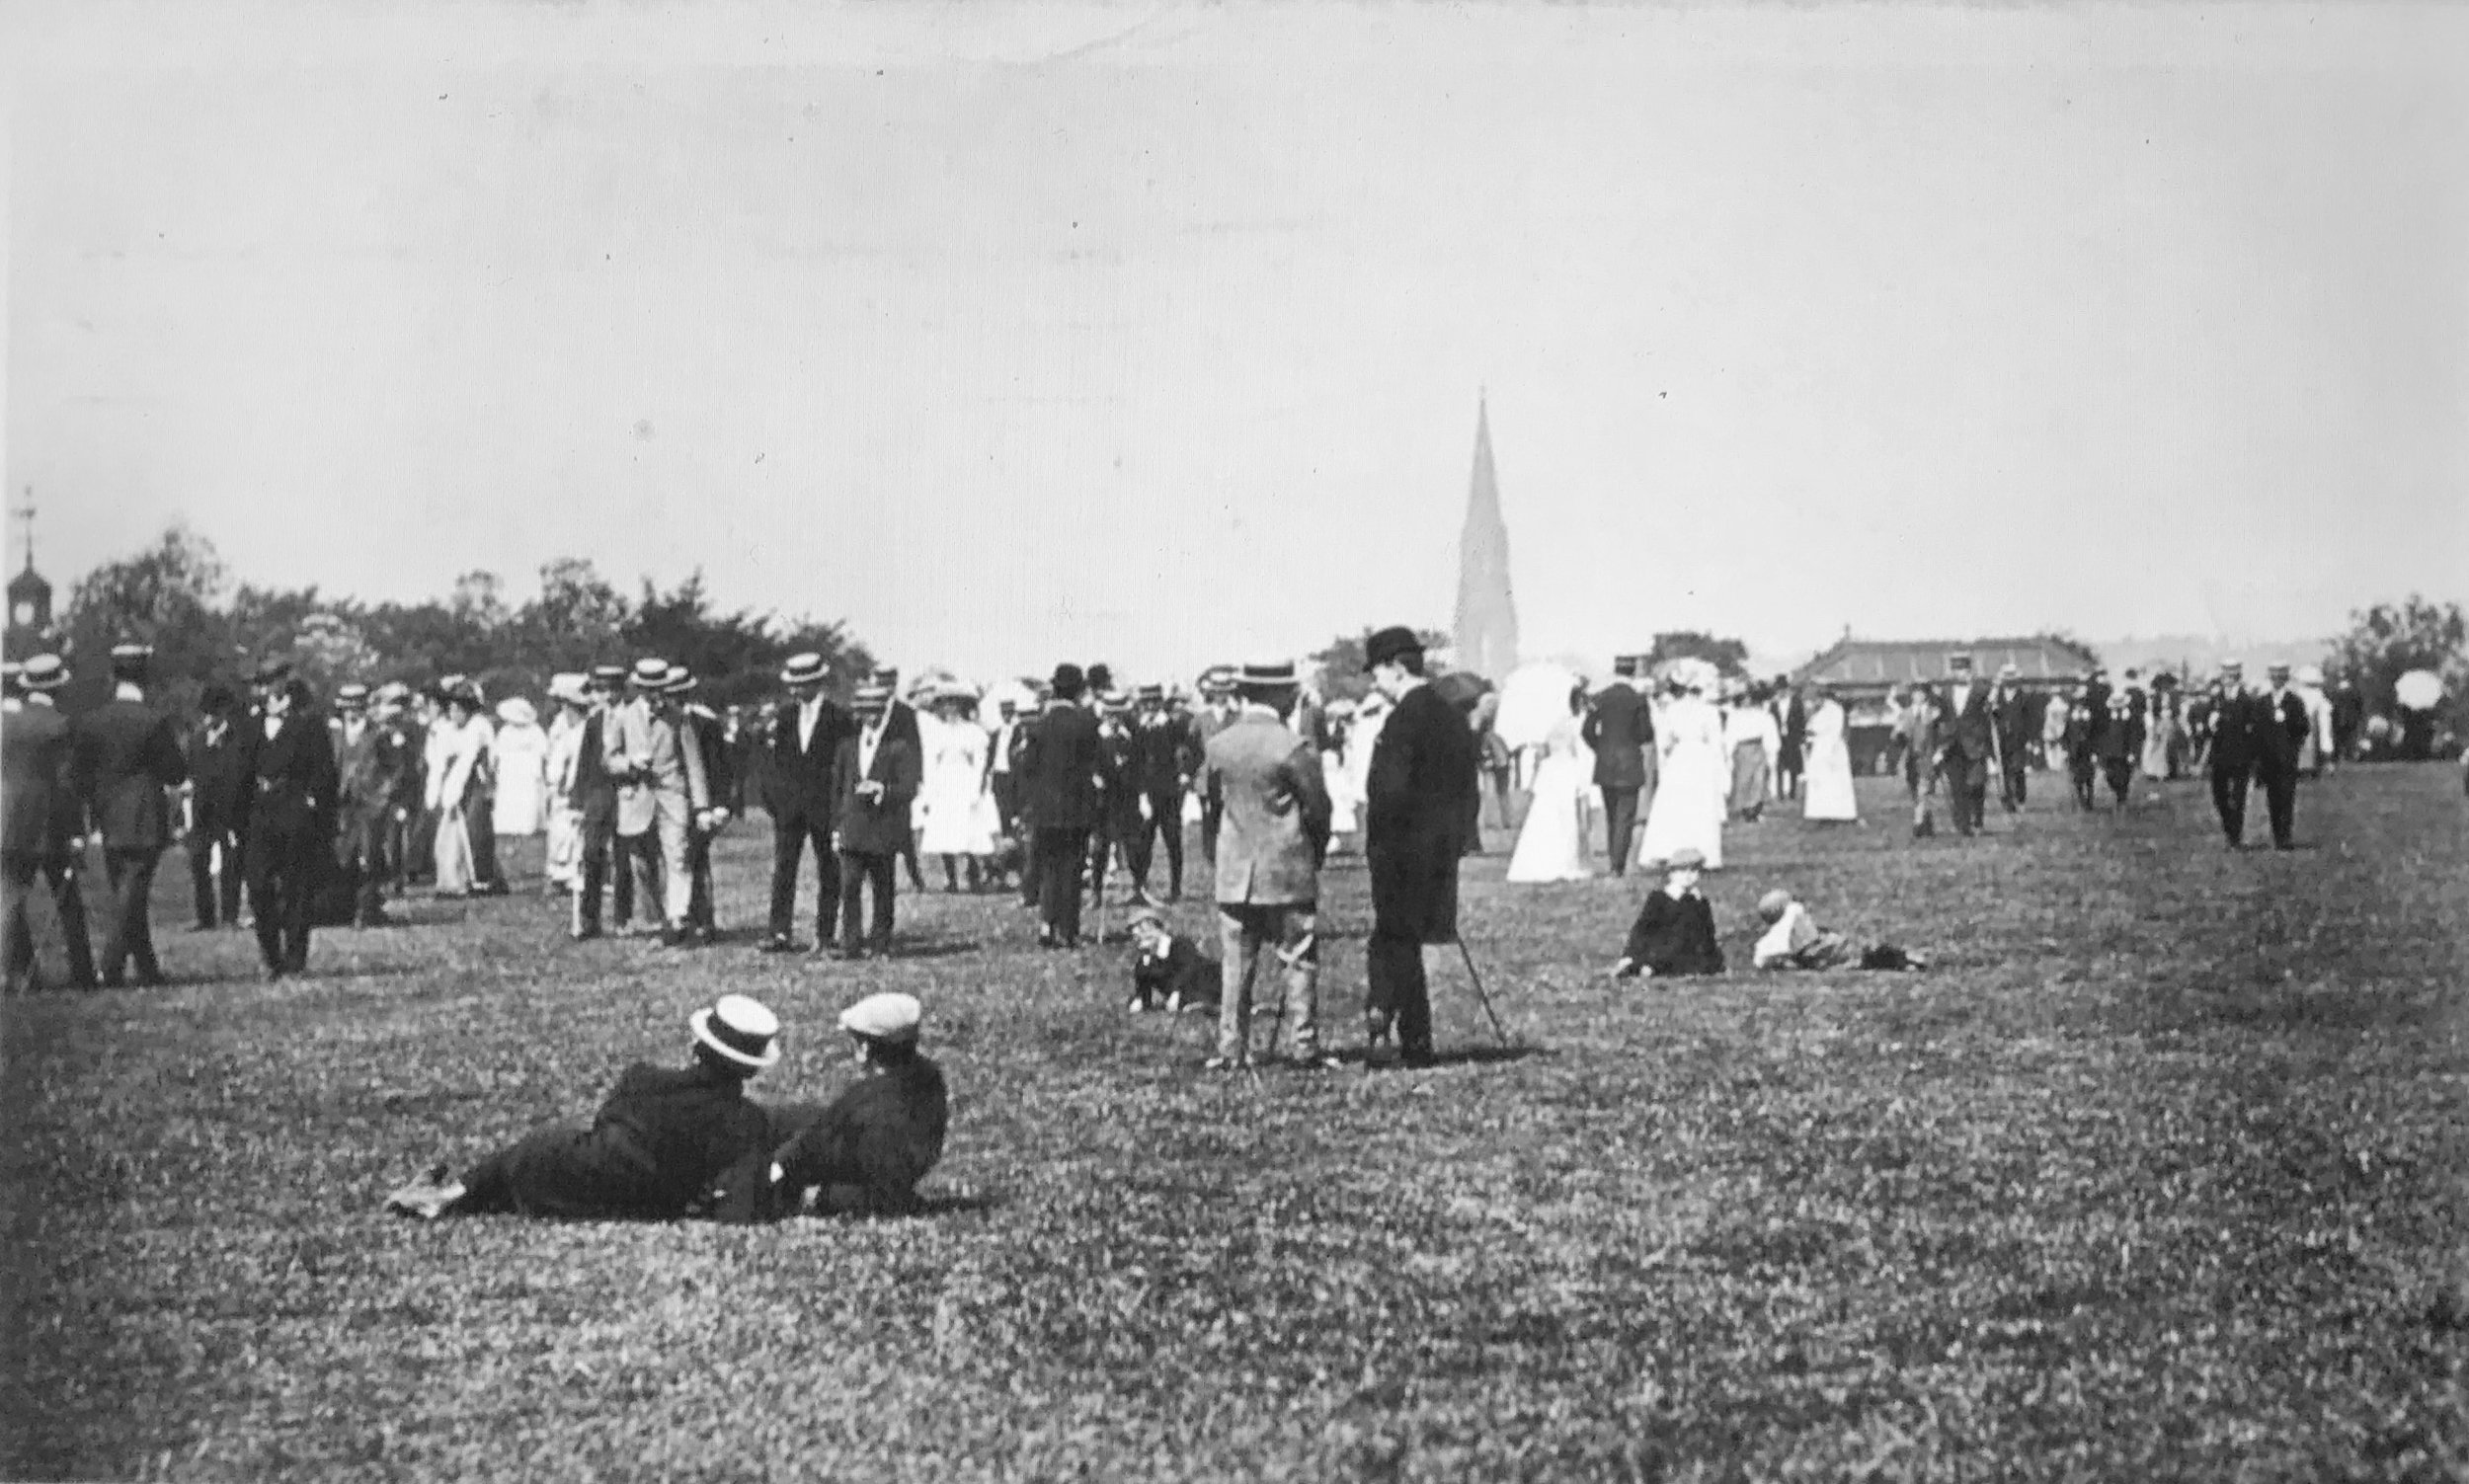 Sunday on Woodhouse Moor, 1905